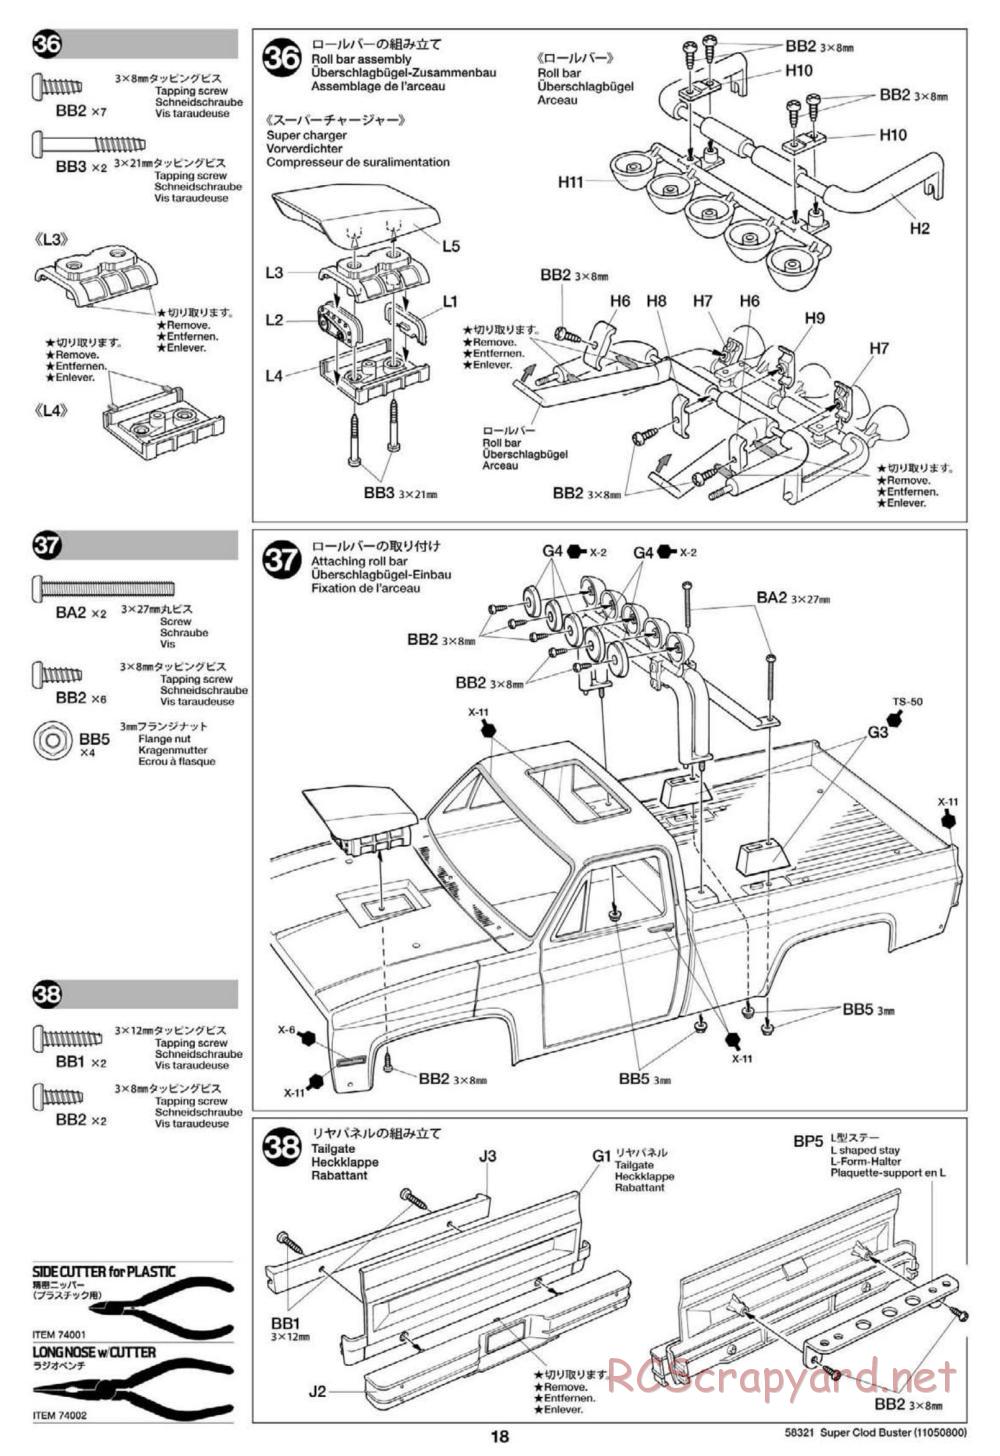 Tamiya - Super Clod Buster Chassis - Manual - Page 18